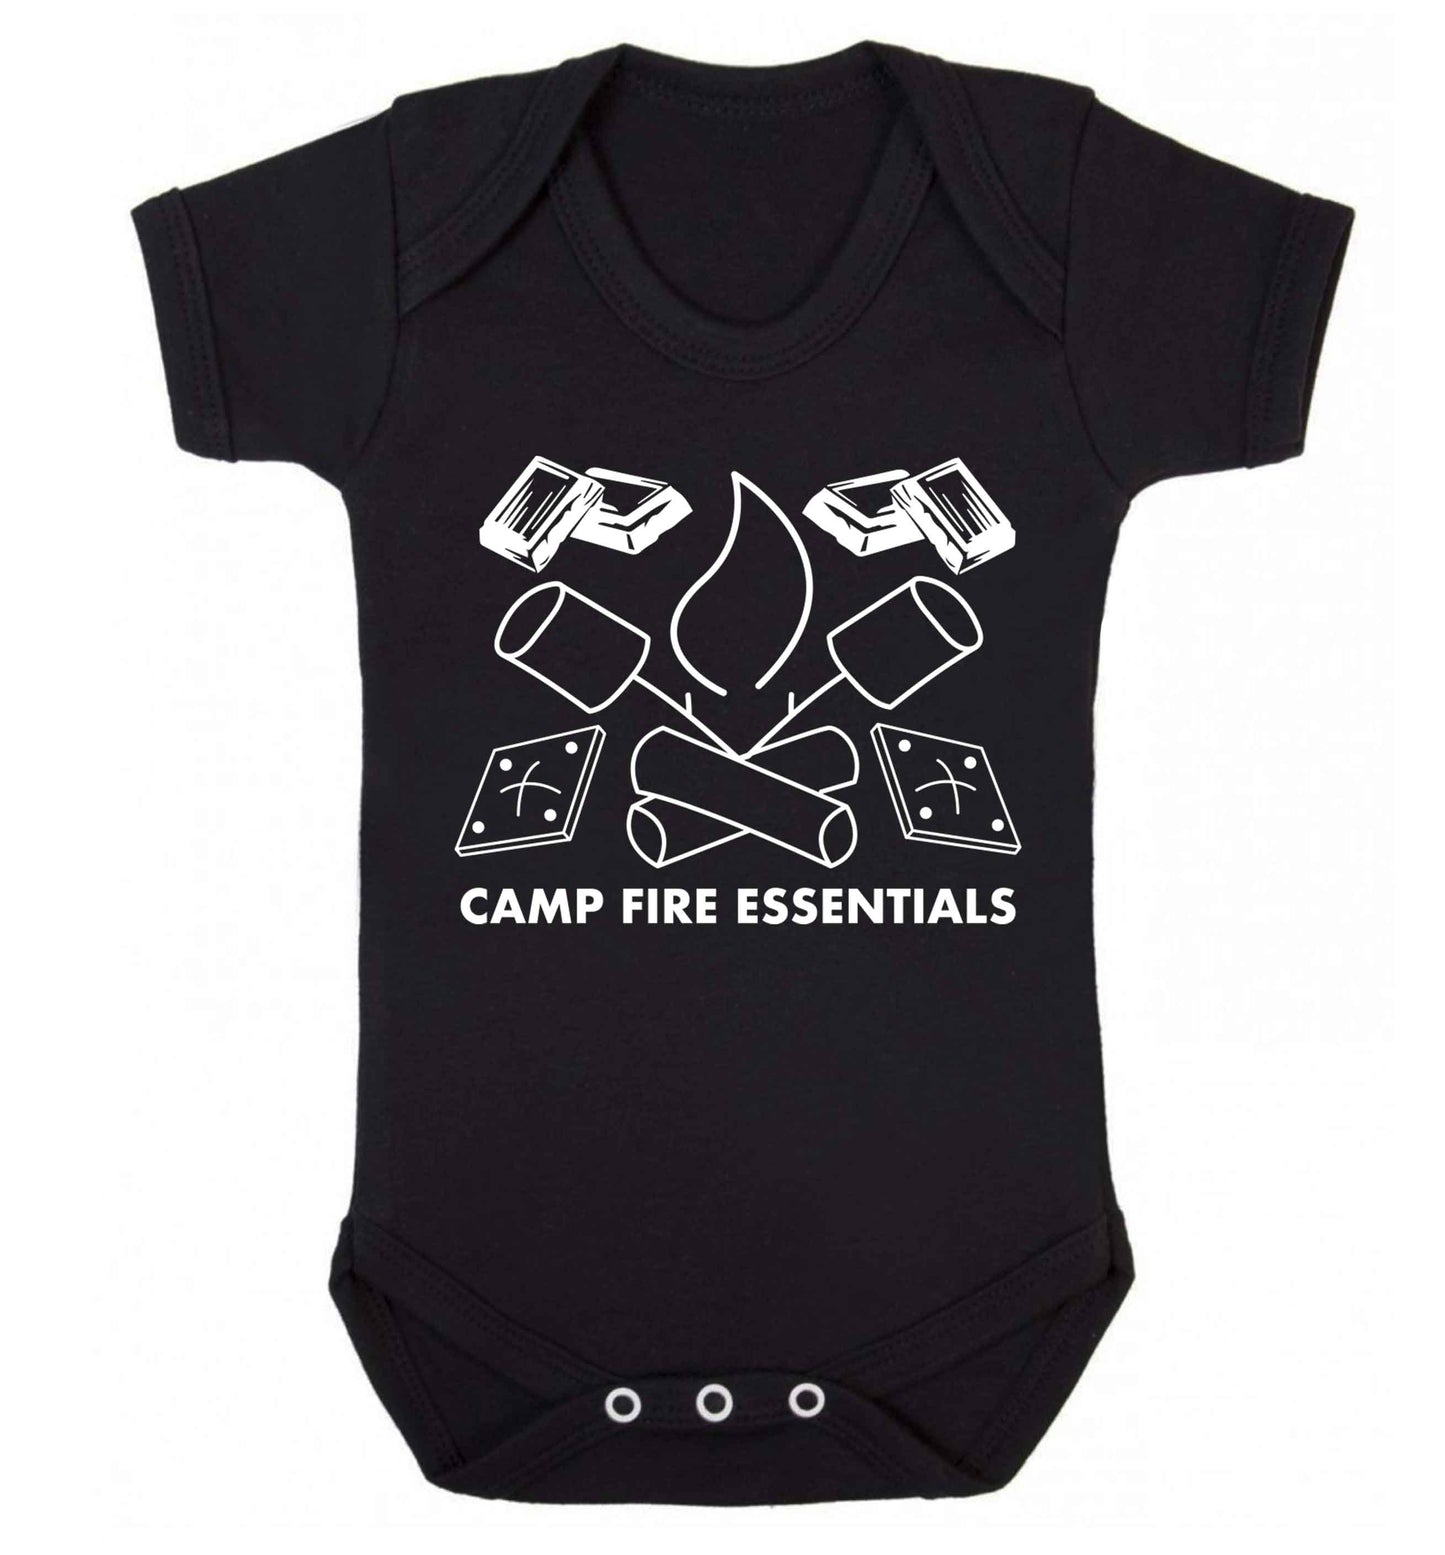 Campfire essentials Baby Vest black 18-24 months